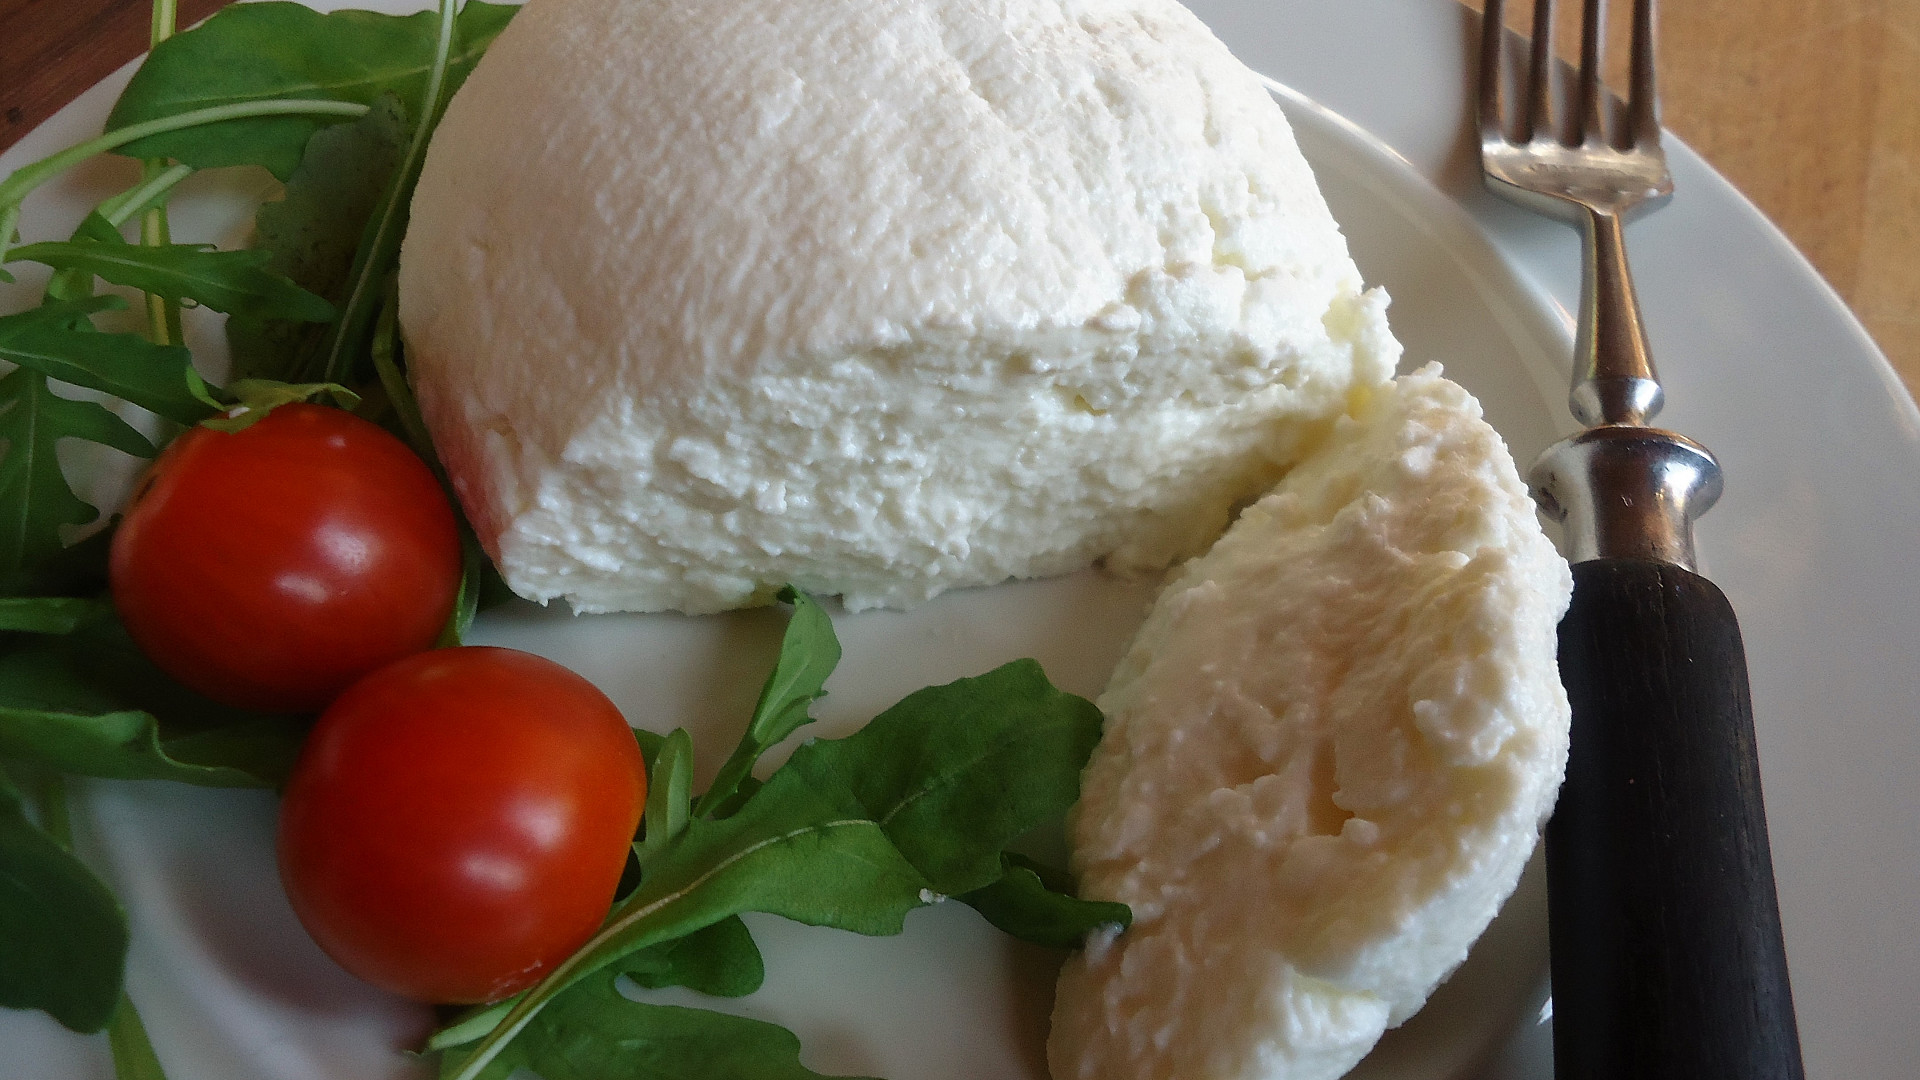 jak si doma vyrobit plísňový sýr camembert? poradíme s postupem krok za krokem